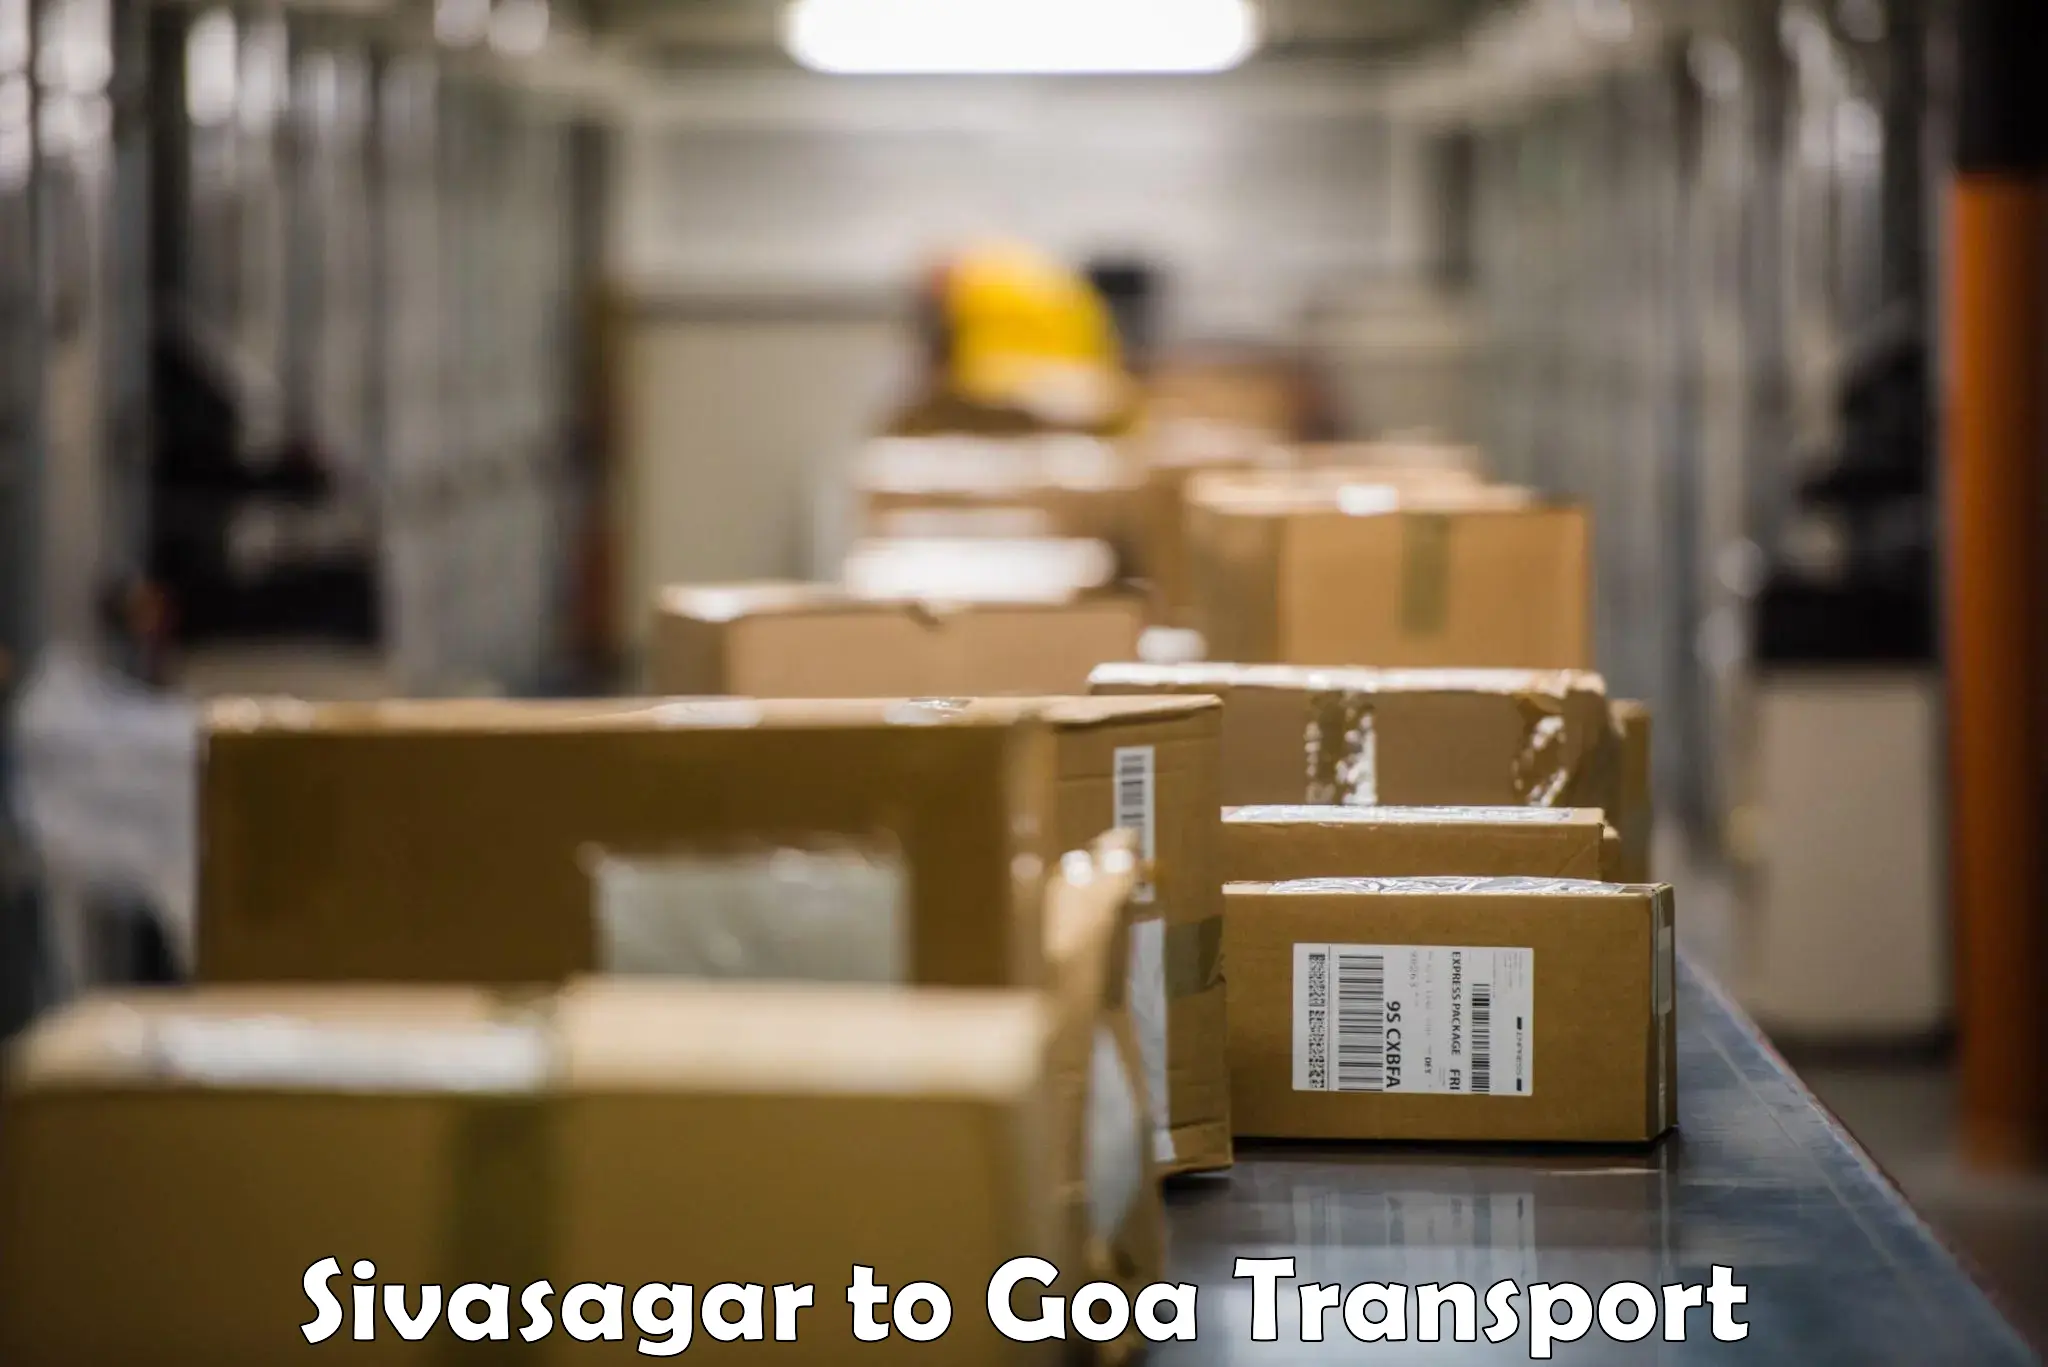 Shipping partner Sivasagar to Mormugao Port